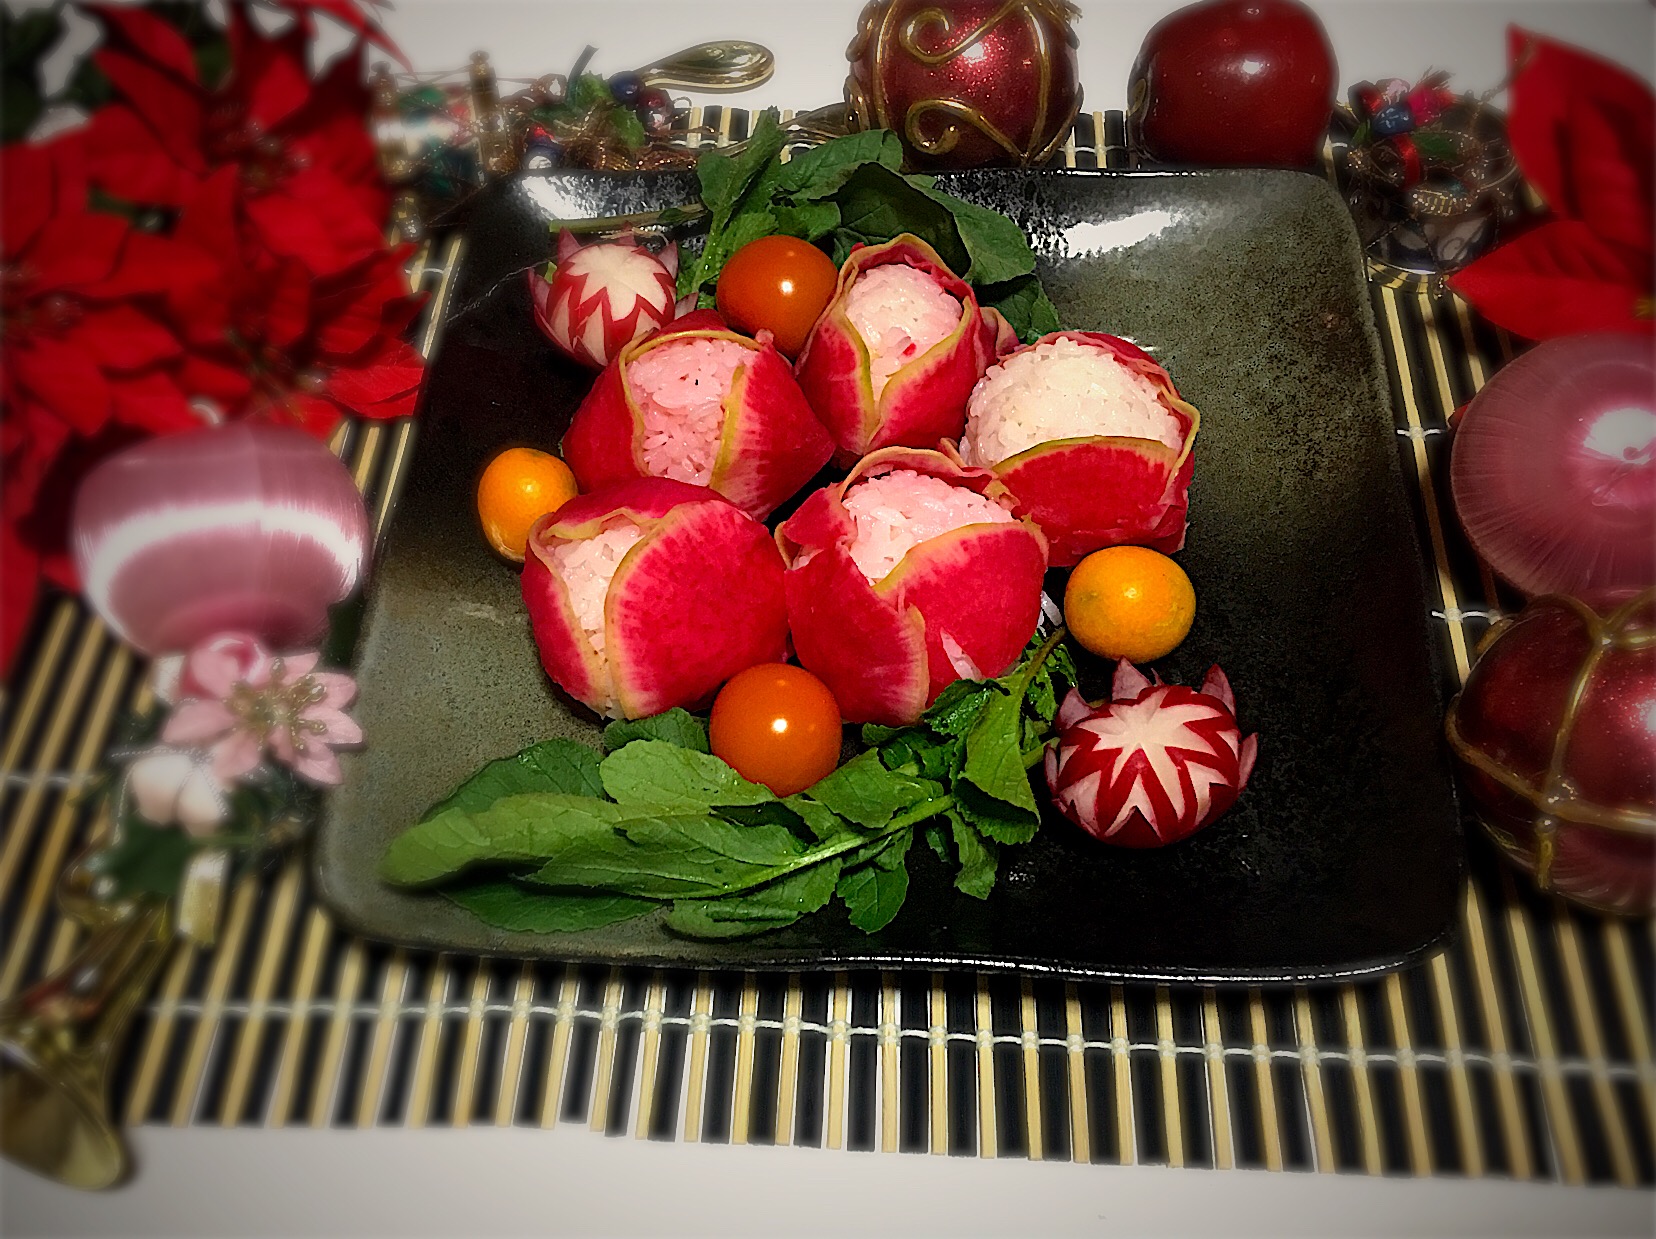 紅芯大根でクリスマスローズ寿司?#紅芯大根 #クリスマス  材料3つでできます? ご飯もピンク色?